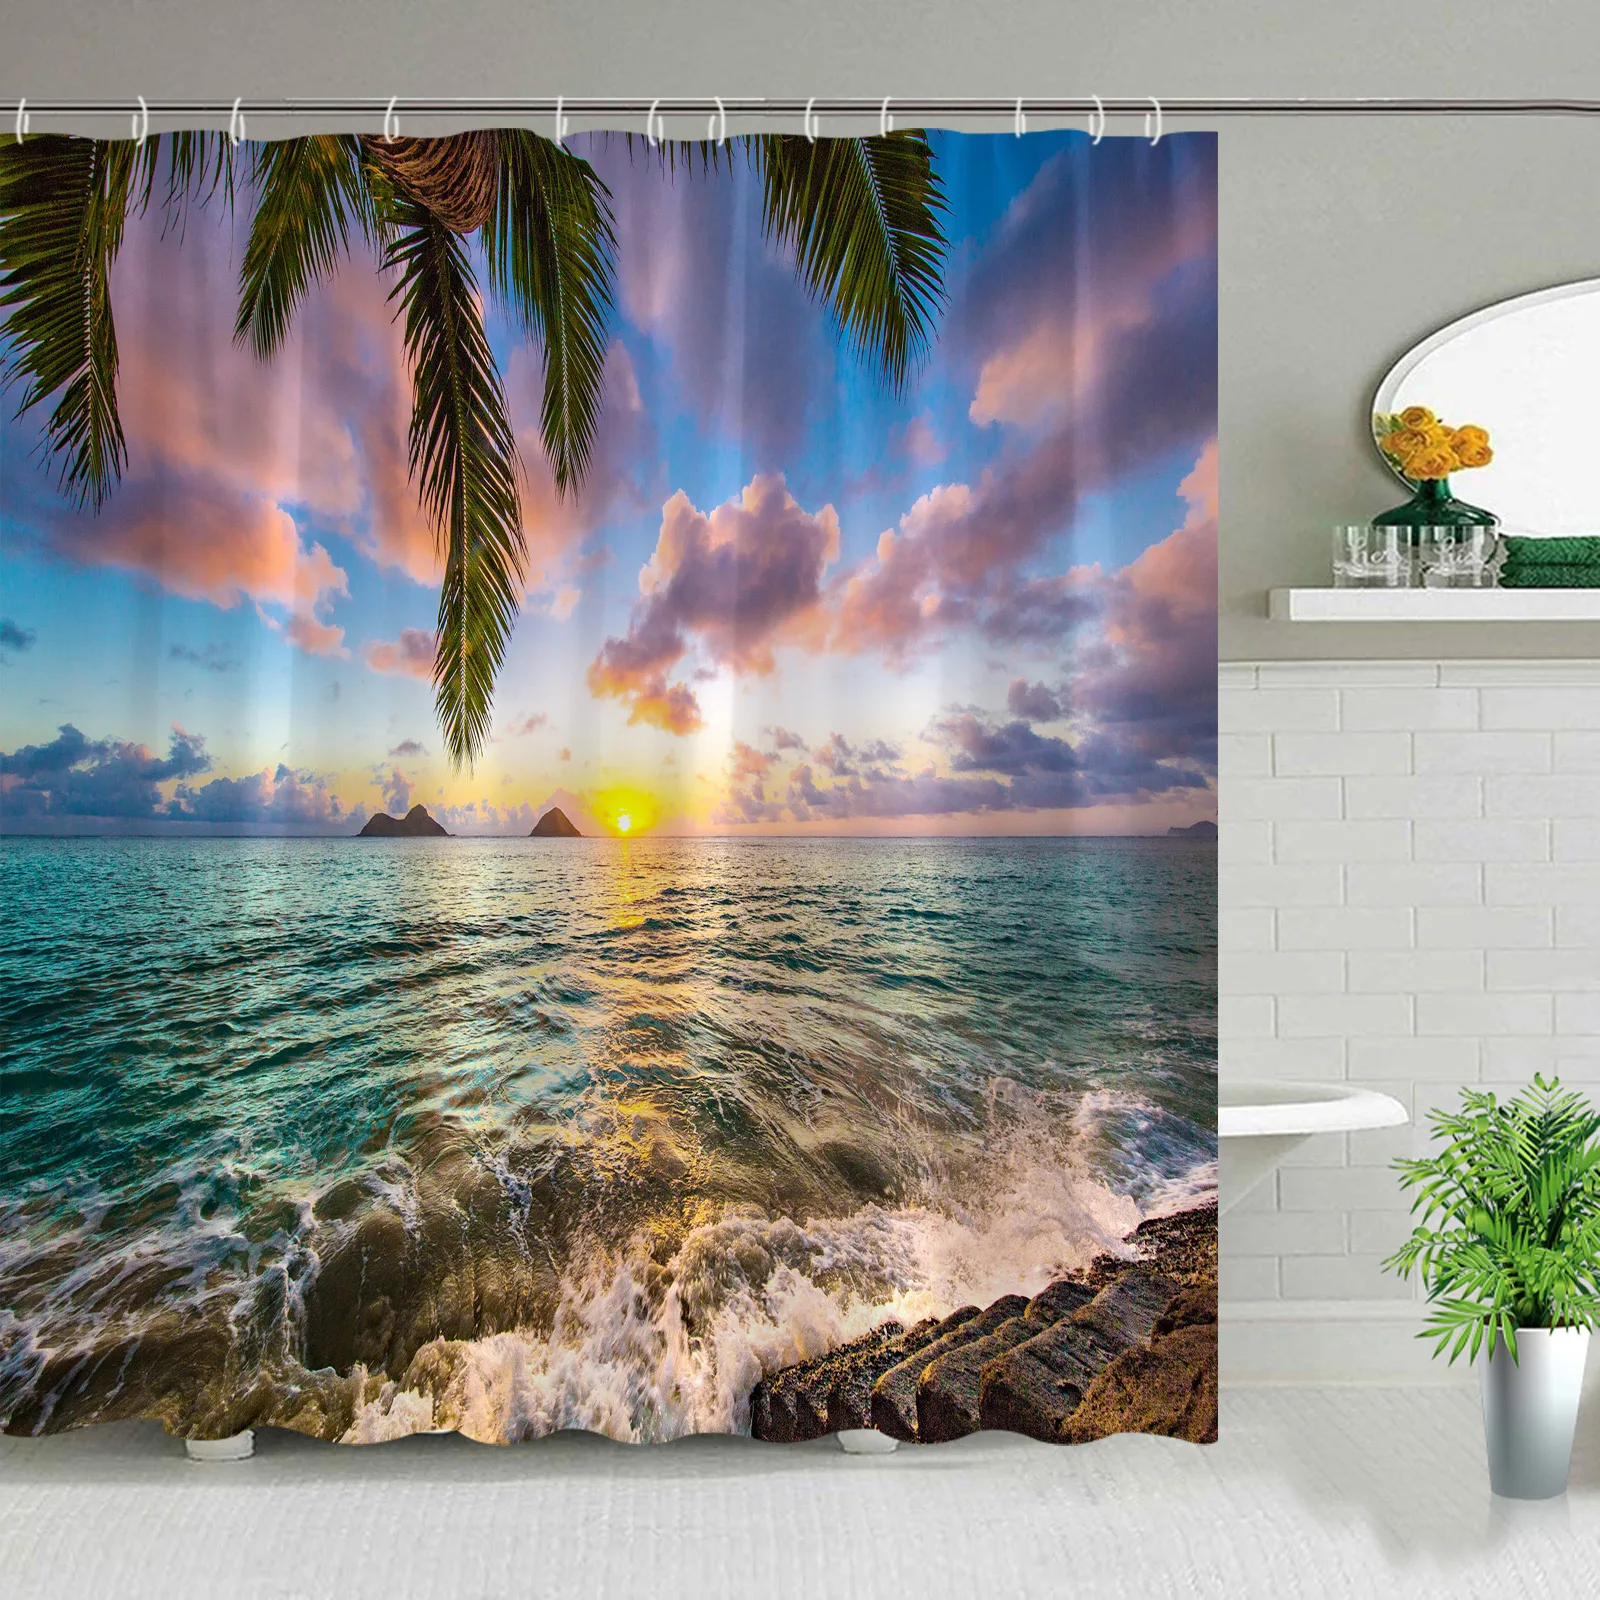 

Набор занавесок для душа с тропическим пейзажем океана, декор из полиэстера, пальмы, песчаный пляж, декоративные комплекты аксессуаров для ванной комнаты